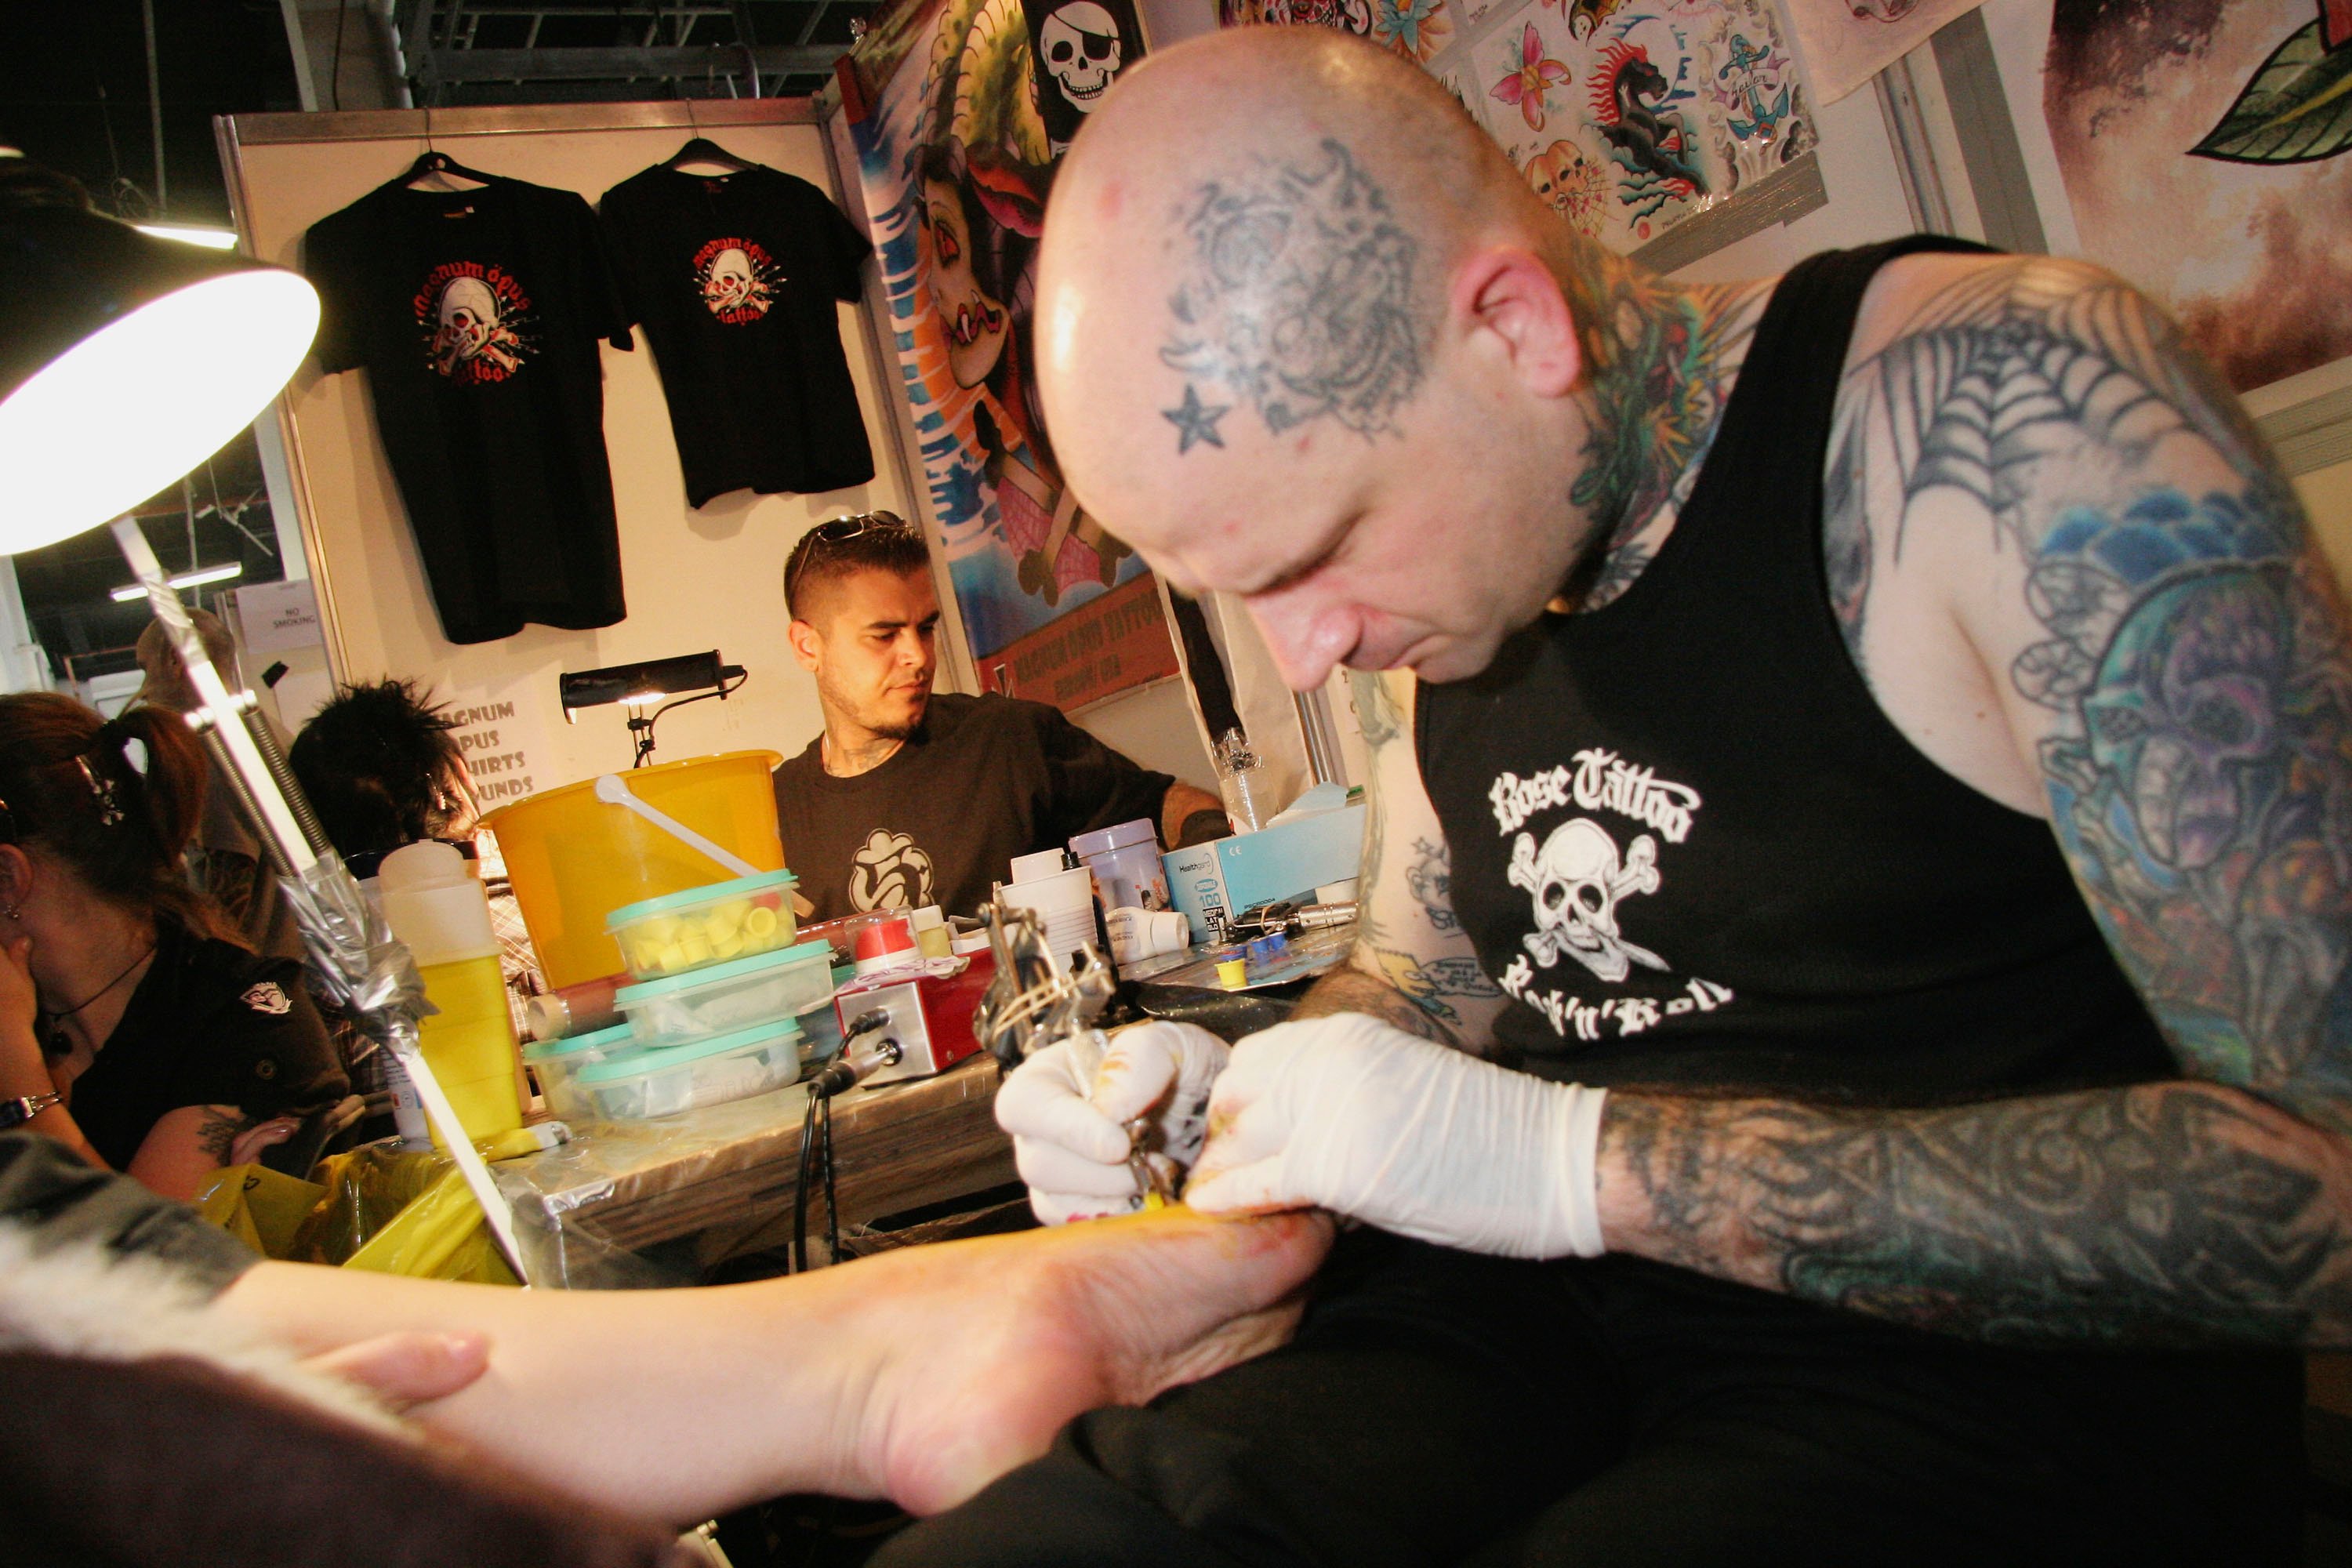 Da viele an den Füßen so besonders sensibel sind, ist die Angst vor dem Tattoo am Fuß besonders hoch.